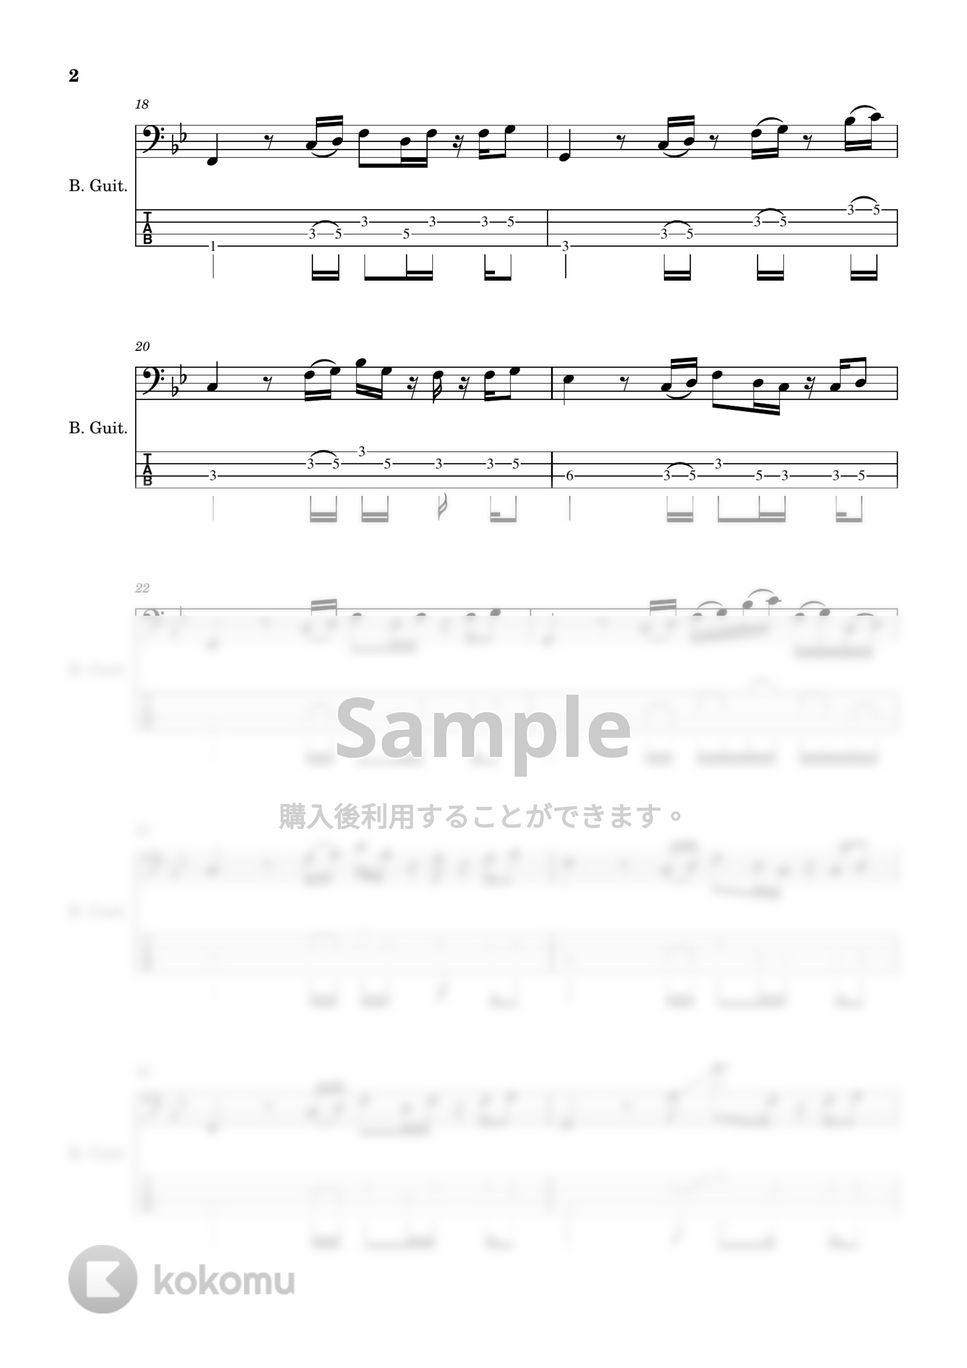 ゲスの極み乙女。 - 【ベース楽譜】 私以外私じゃないの / ゲスの極み乙女。 - Watashi Igai Watashi ja Nai no / Lowest Lowest Girl 【BassScore】 by Cookie's Drum Score